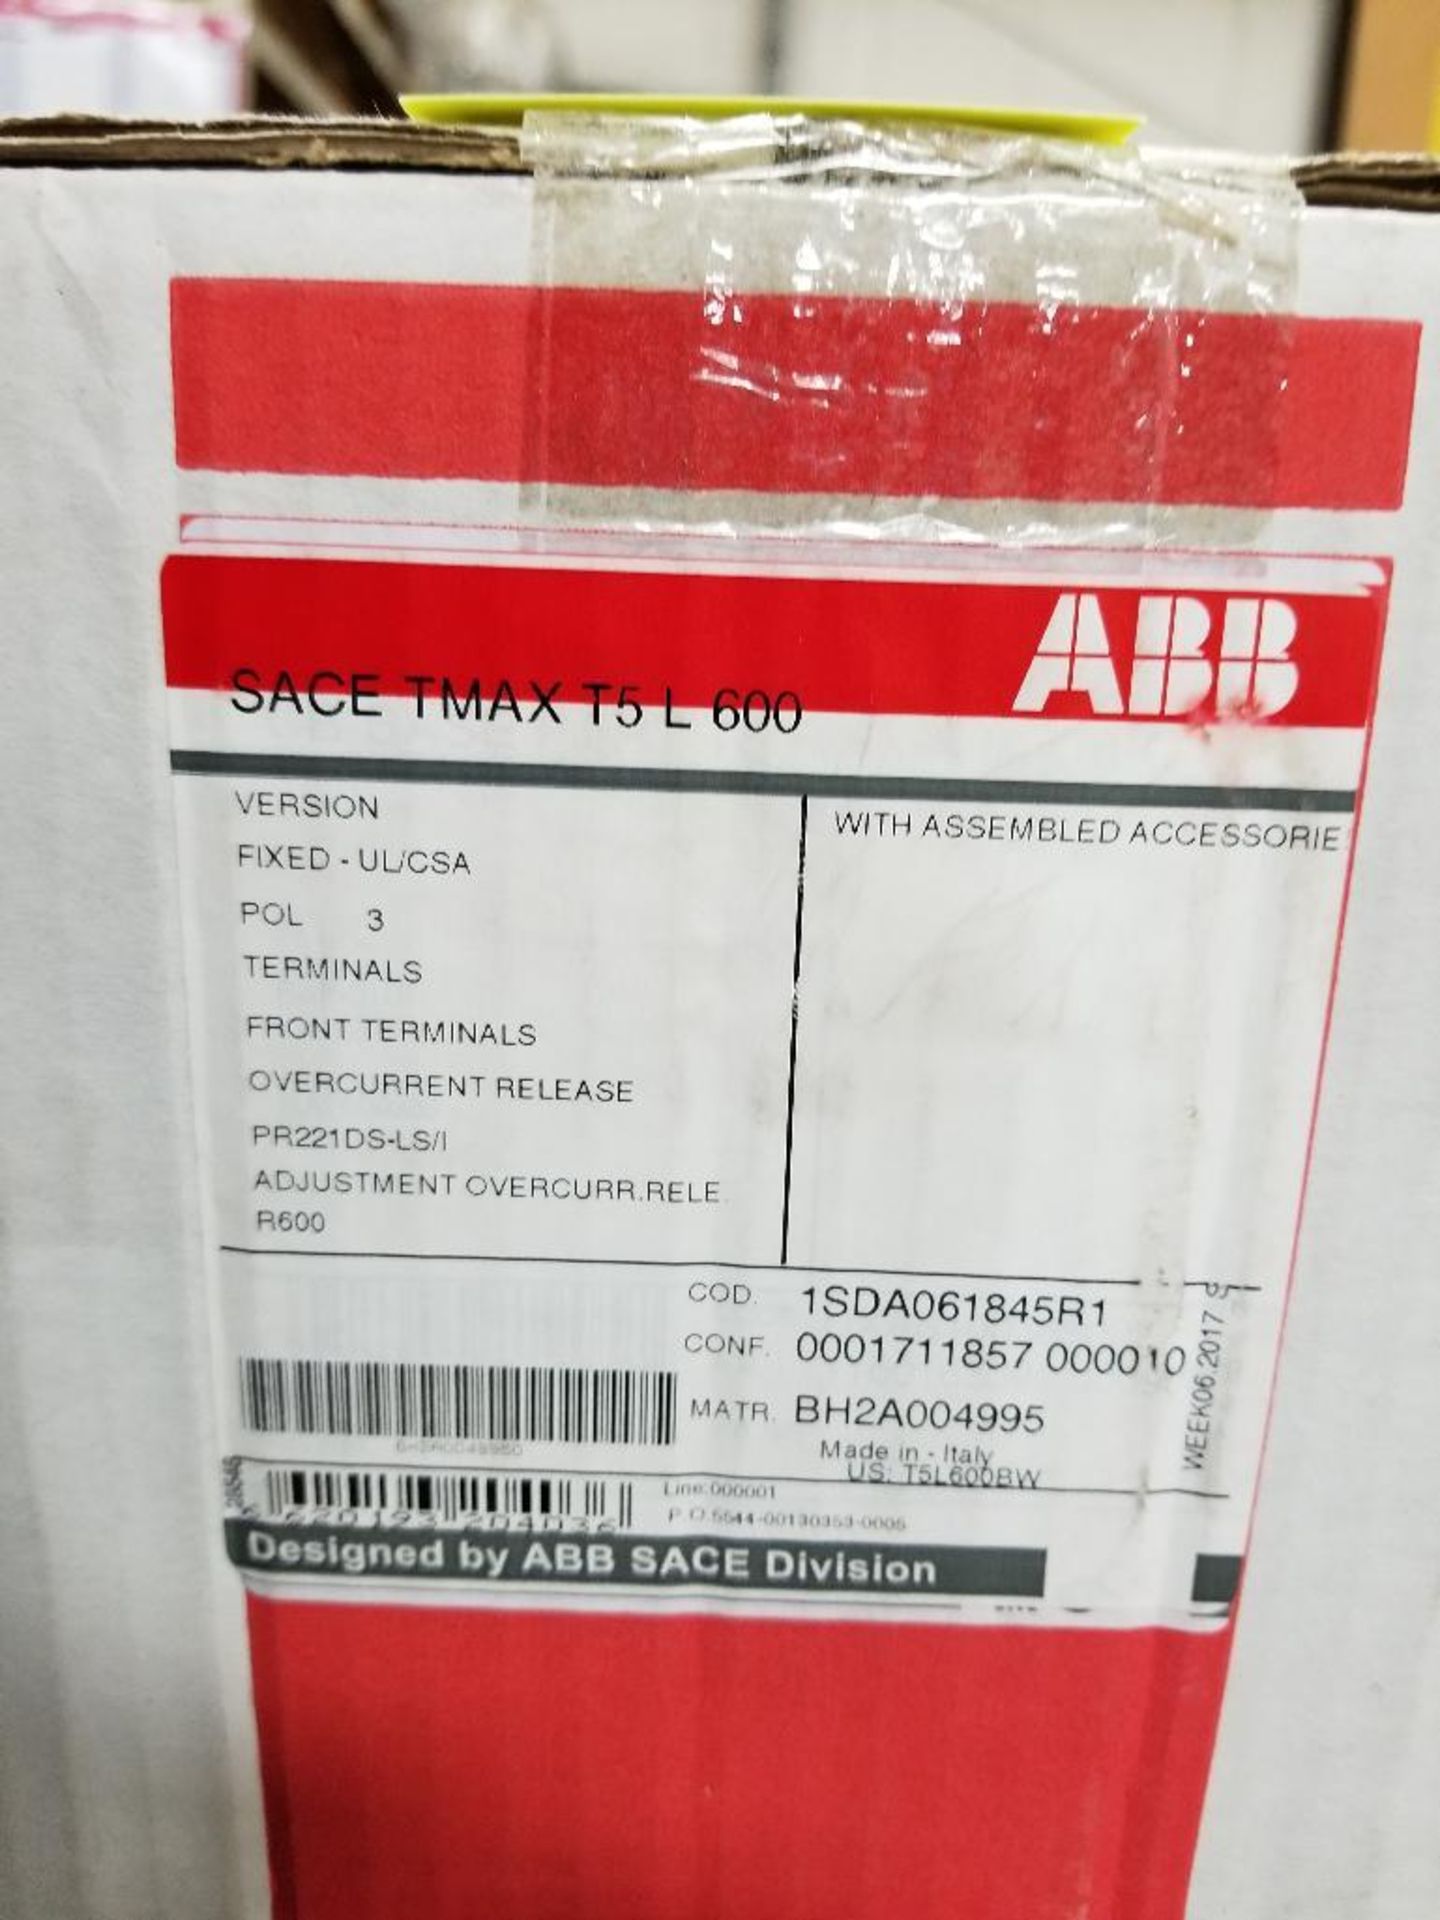 ABB circuit breaker. SACE TMAX T5 L 600. New in box.